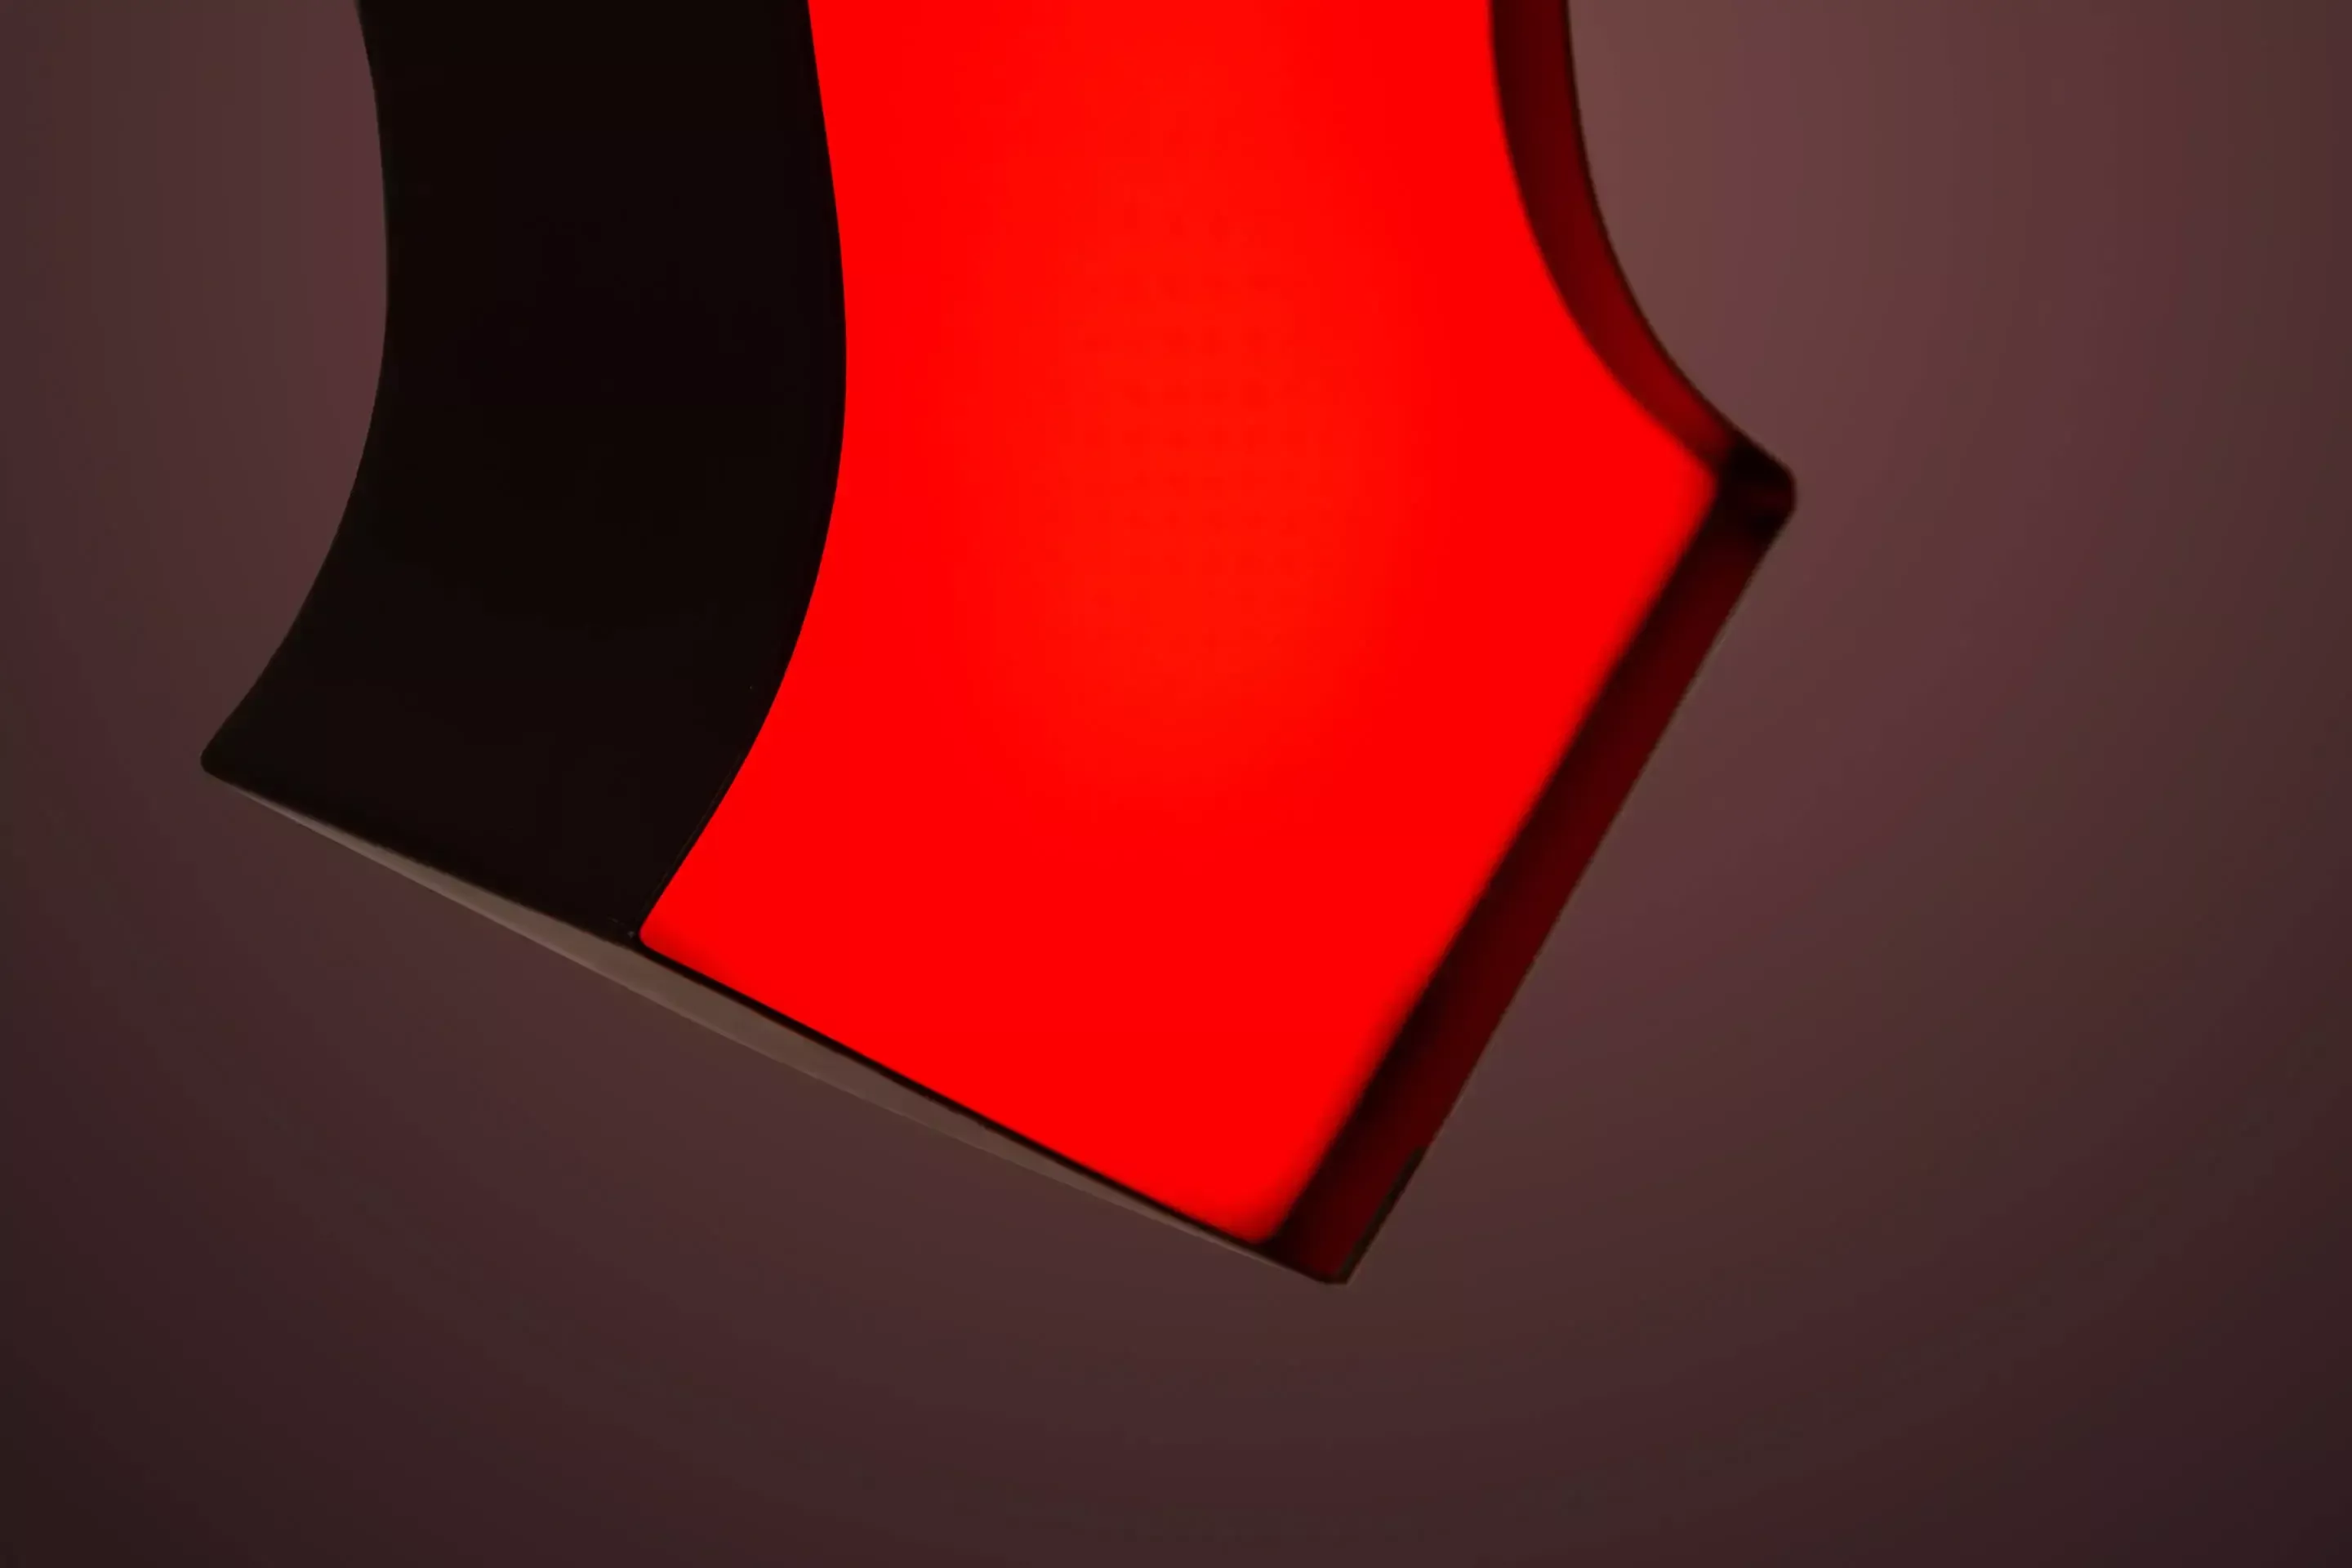 Lettre M - lettre lumineuse LED personnalisée en rouge, détail